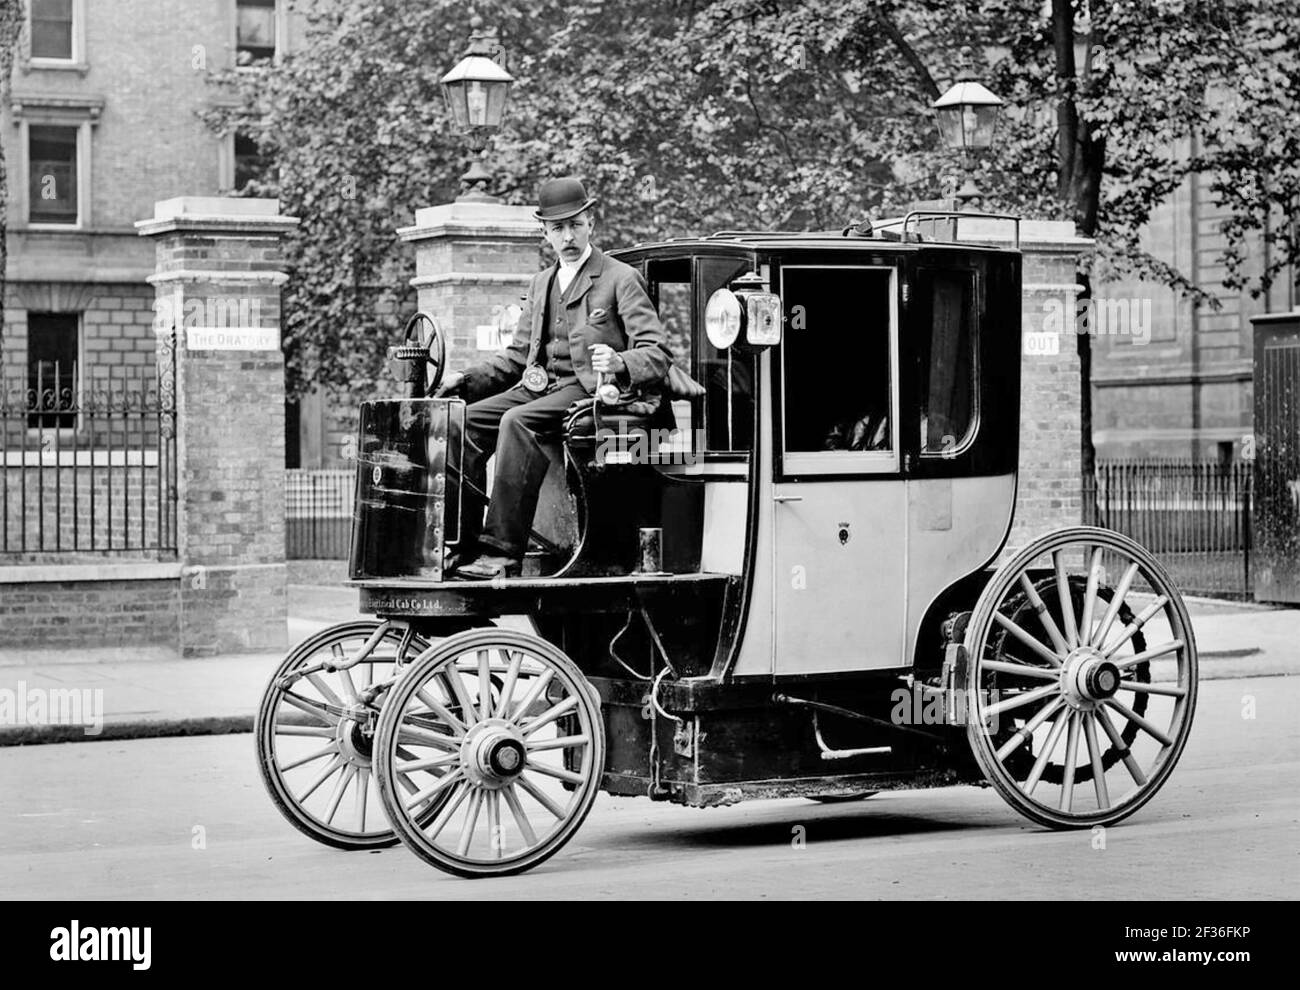 ELEKTROMOTOR CAB ca. 1897 außerhalb Brompton Oratory, London. Entworfen von Walter Charles Bersey war es eines von etwa 75 betrieben von der London Electrical Cab Company. Der Spitzname der Kolibris wegen des Lärms, den sie machten, die Strecke war etwa 30-35 Meilen. Die Farbe war schwarz und gelb. Stockfoto